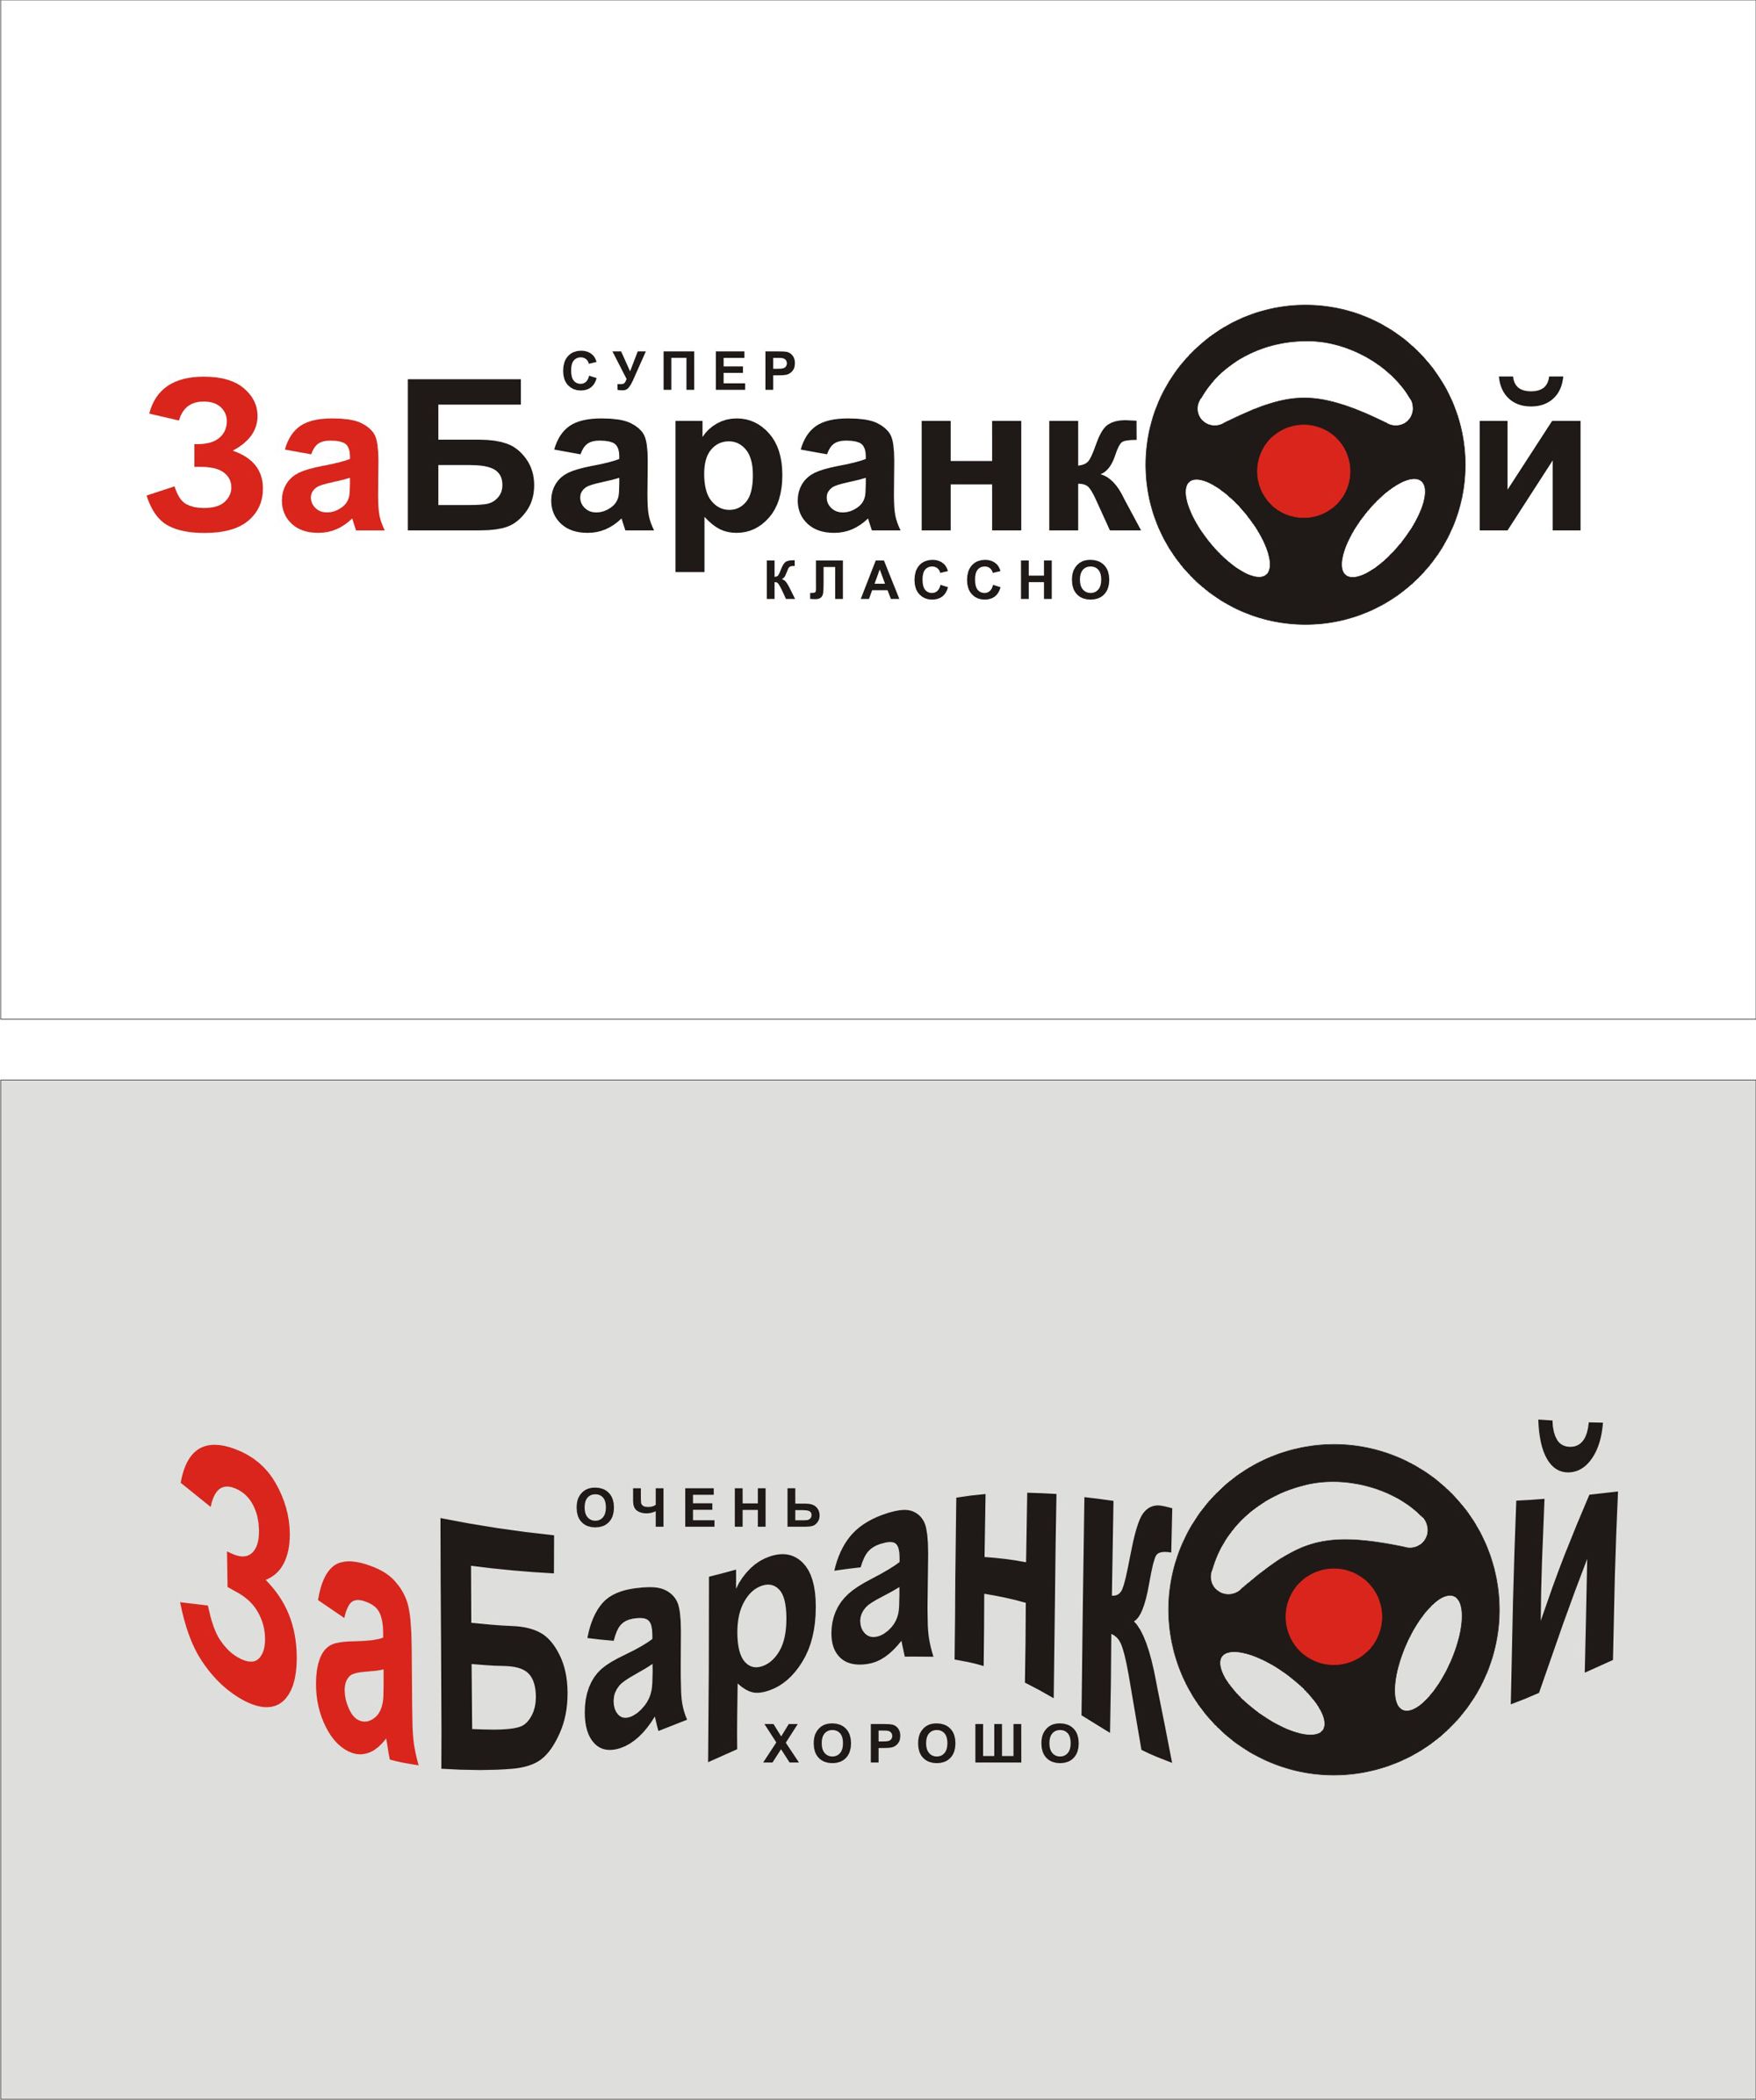 Логотип для ЗА БАРАНКОЙ - дизайнер gudja-45